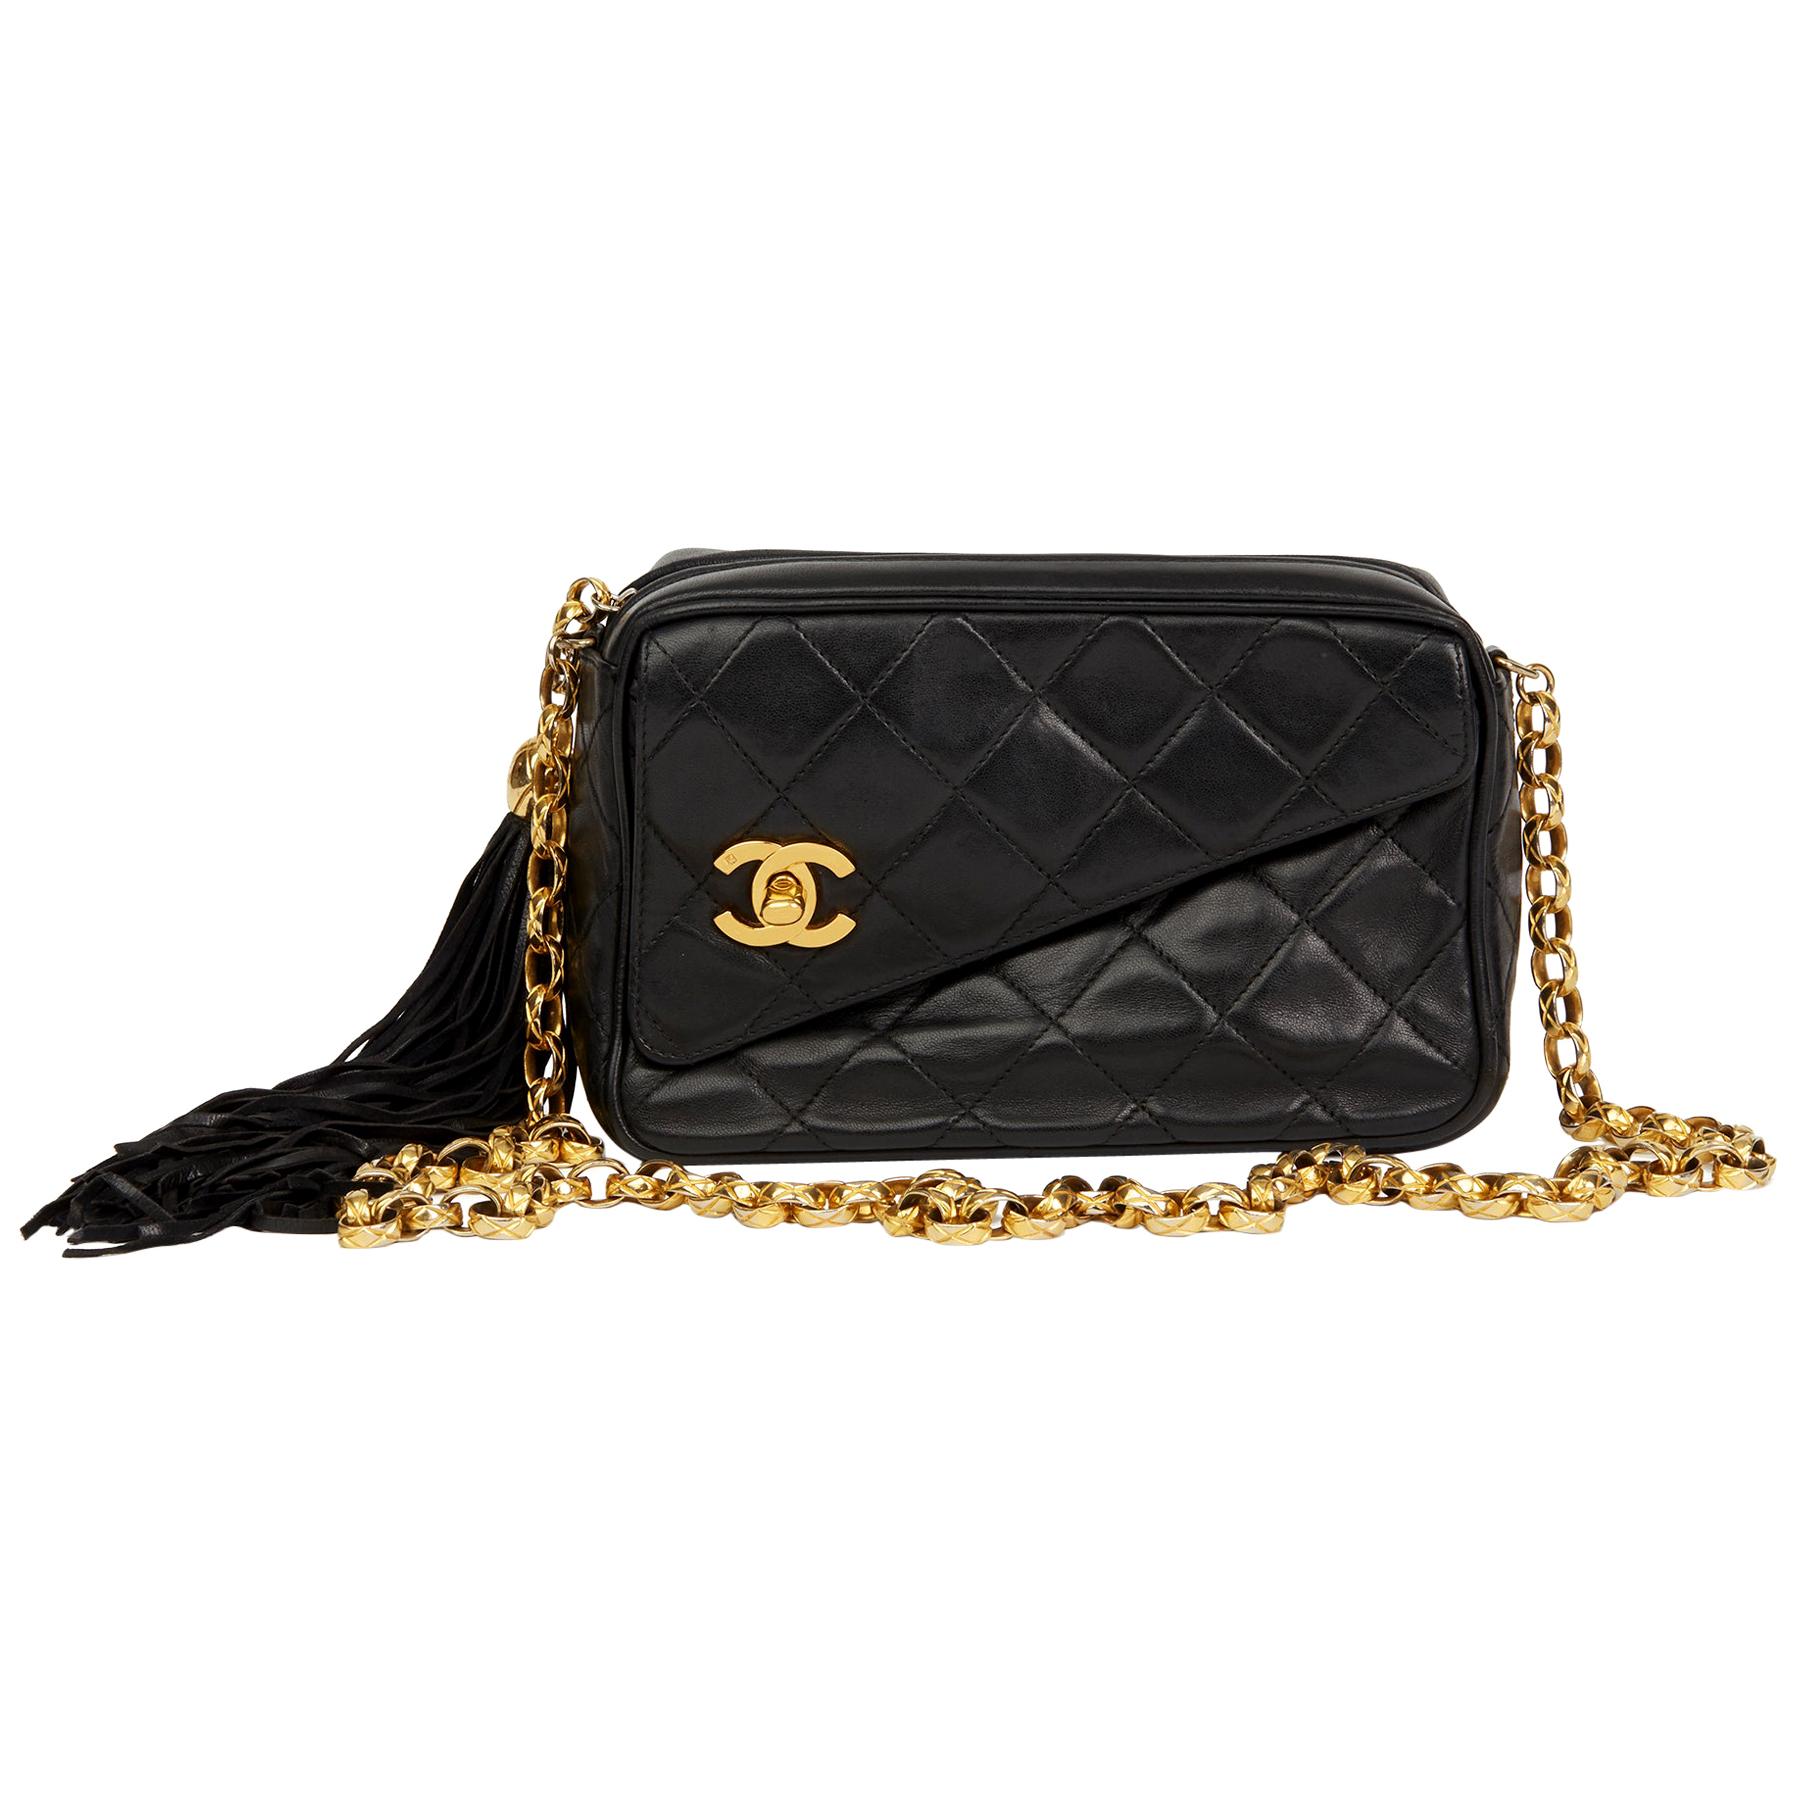 1992 Chanel Black Quilted Lambskin Vintage Classic Fringe Shoulder Bag